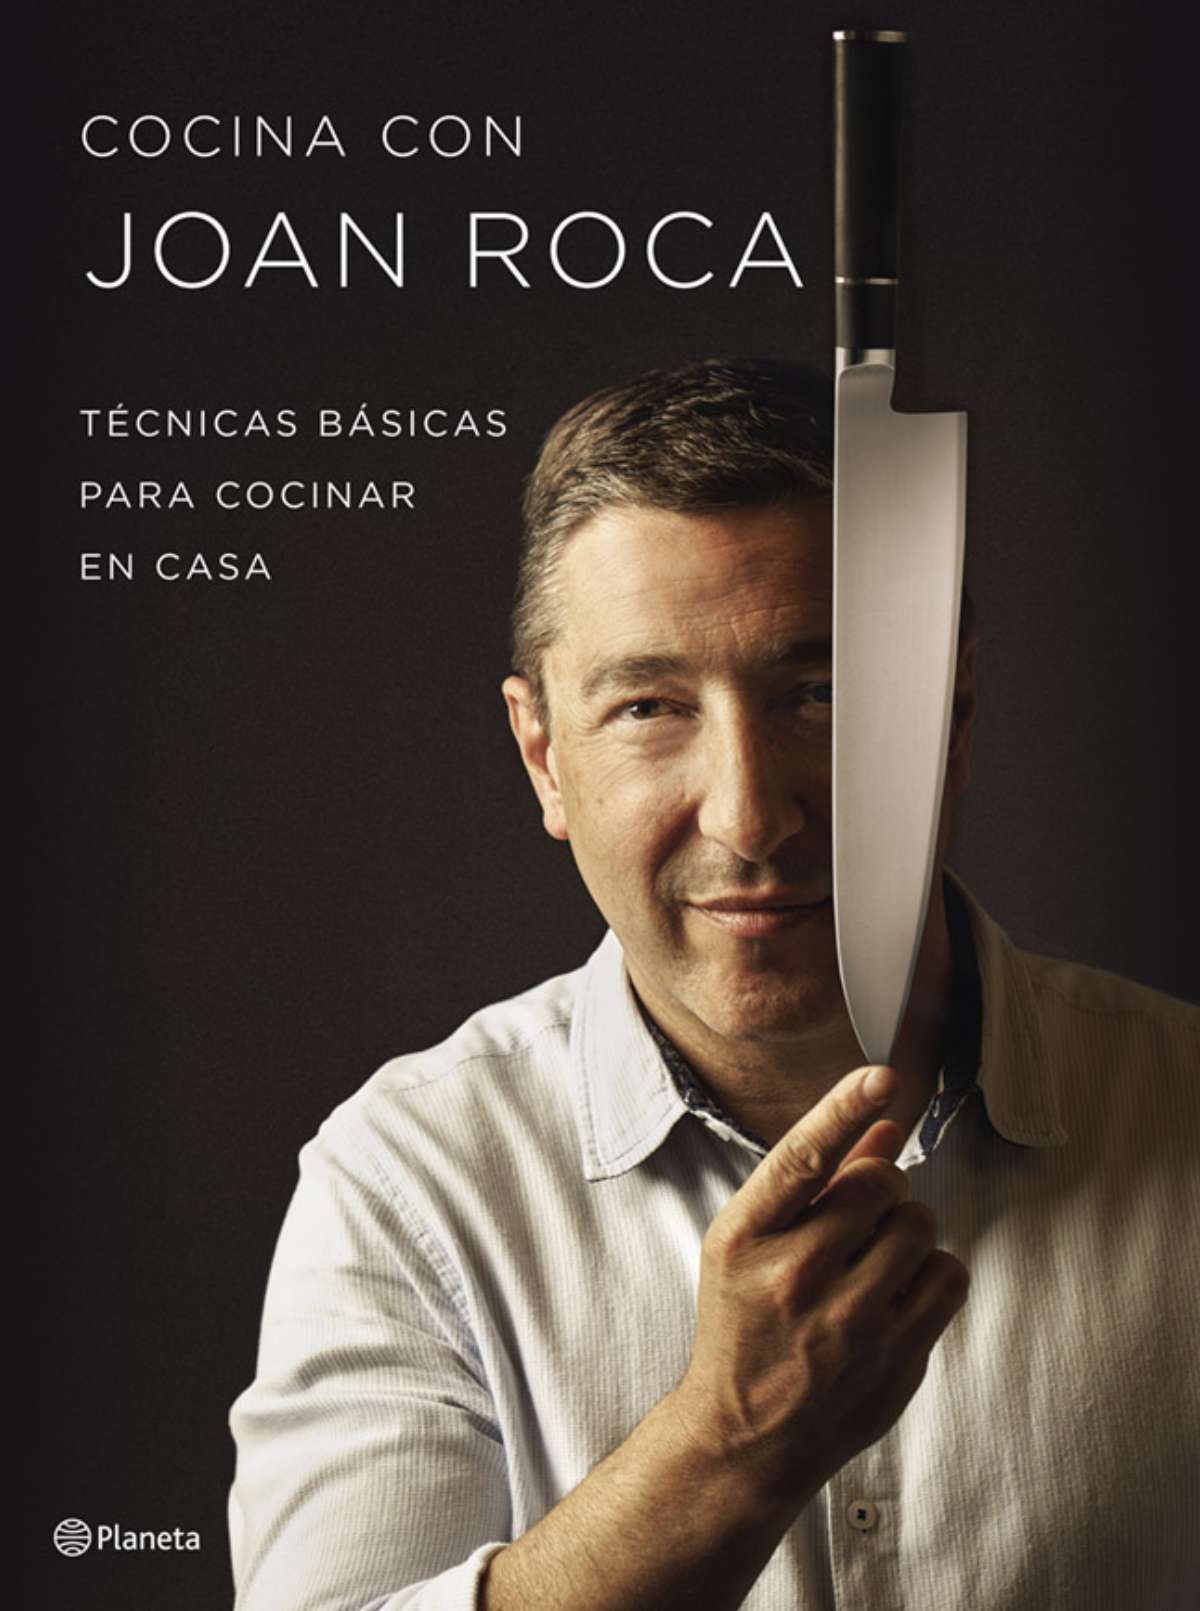 Cocina con Joan Roca técnicas básicas para cocinar en casa - image 1